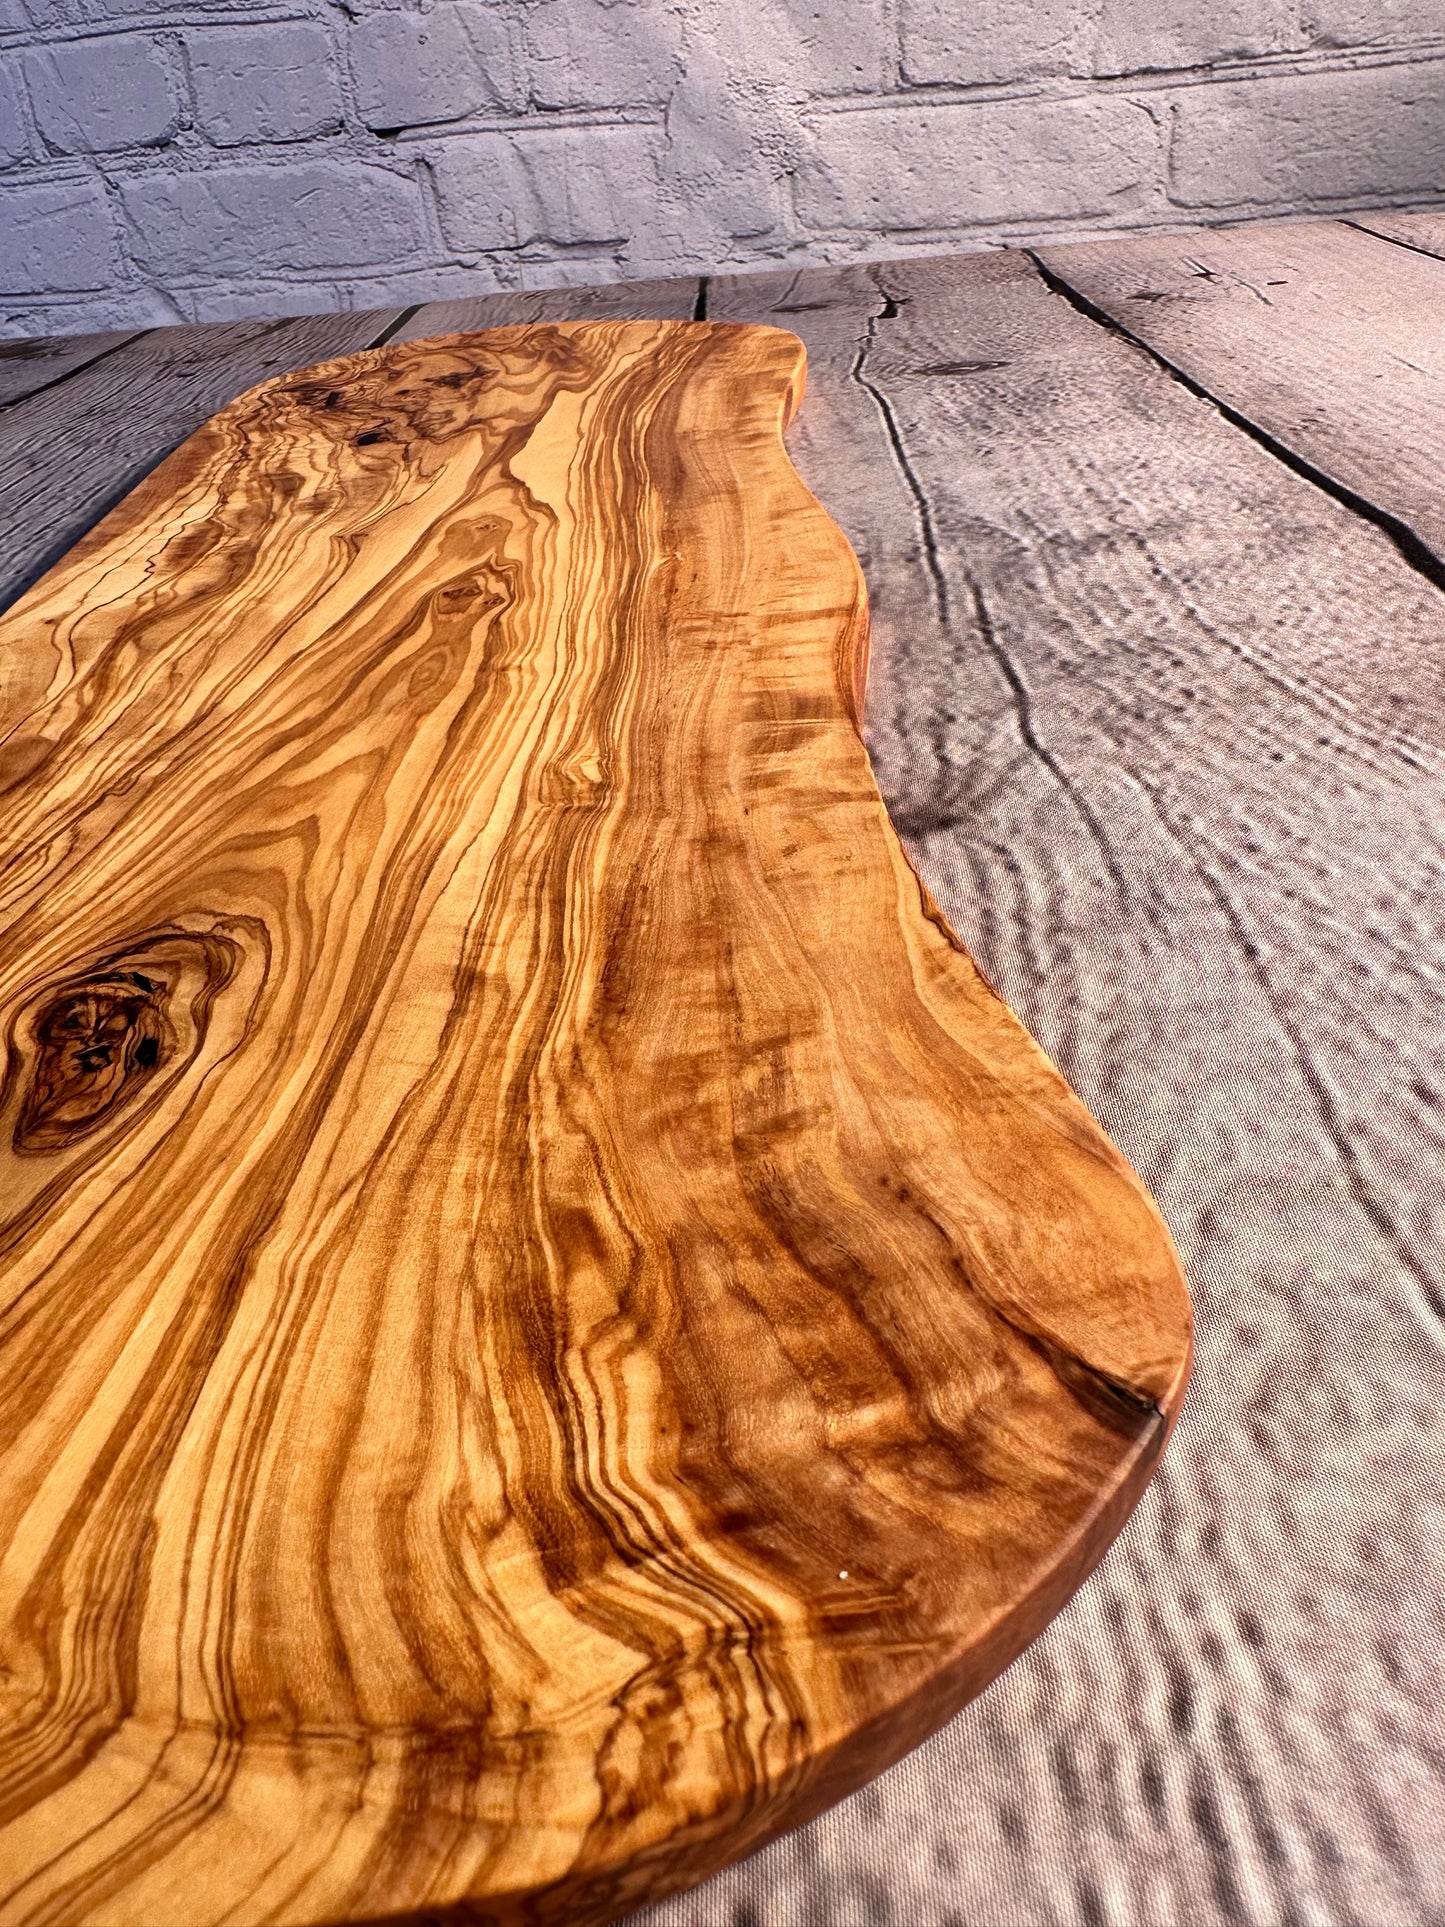 Striking Olive Wood Board